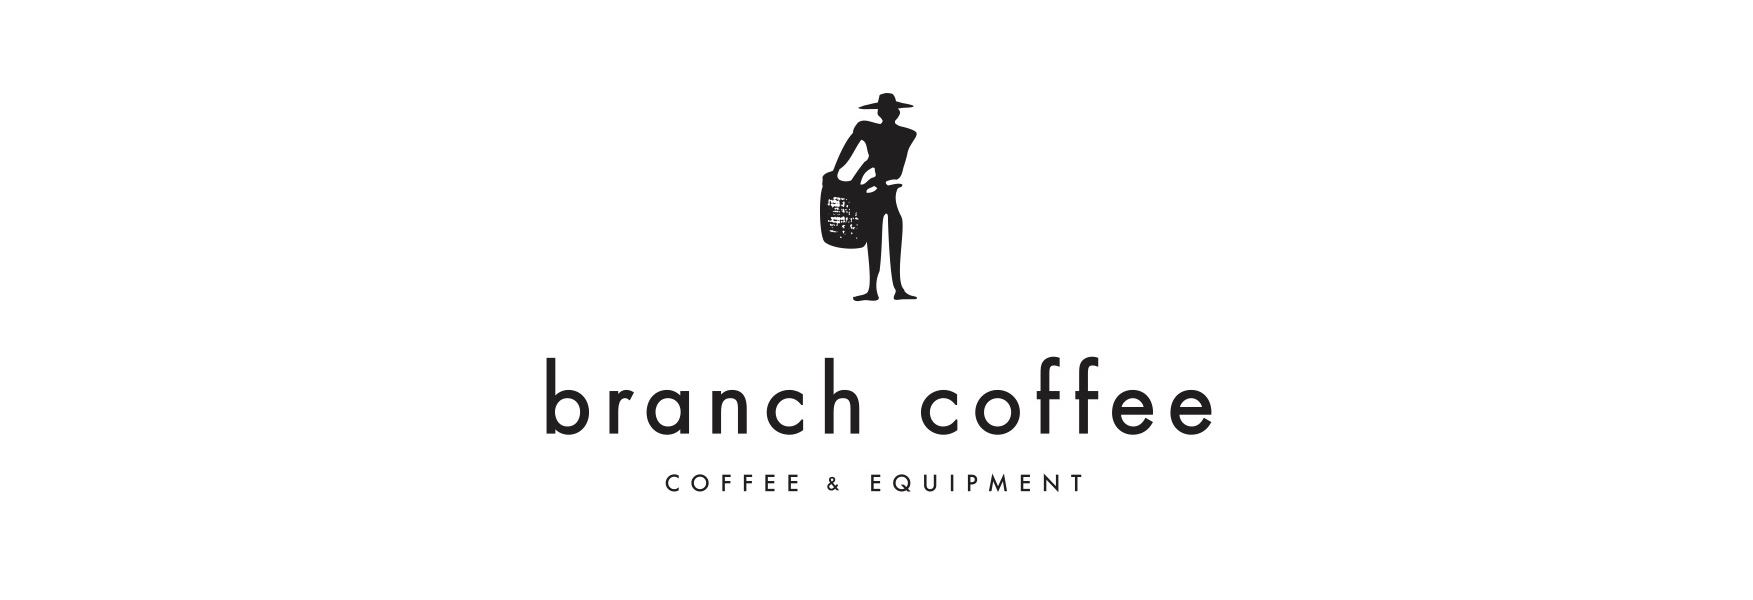 branch coffee